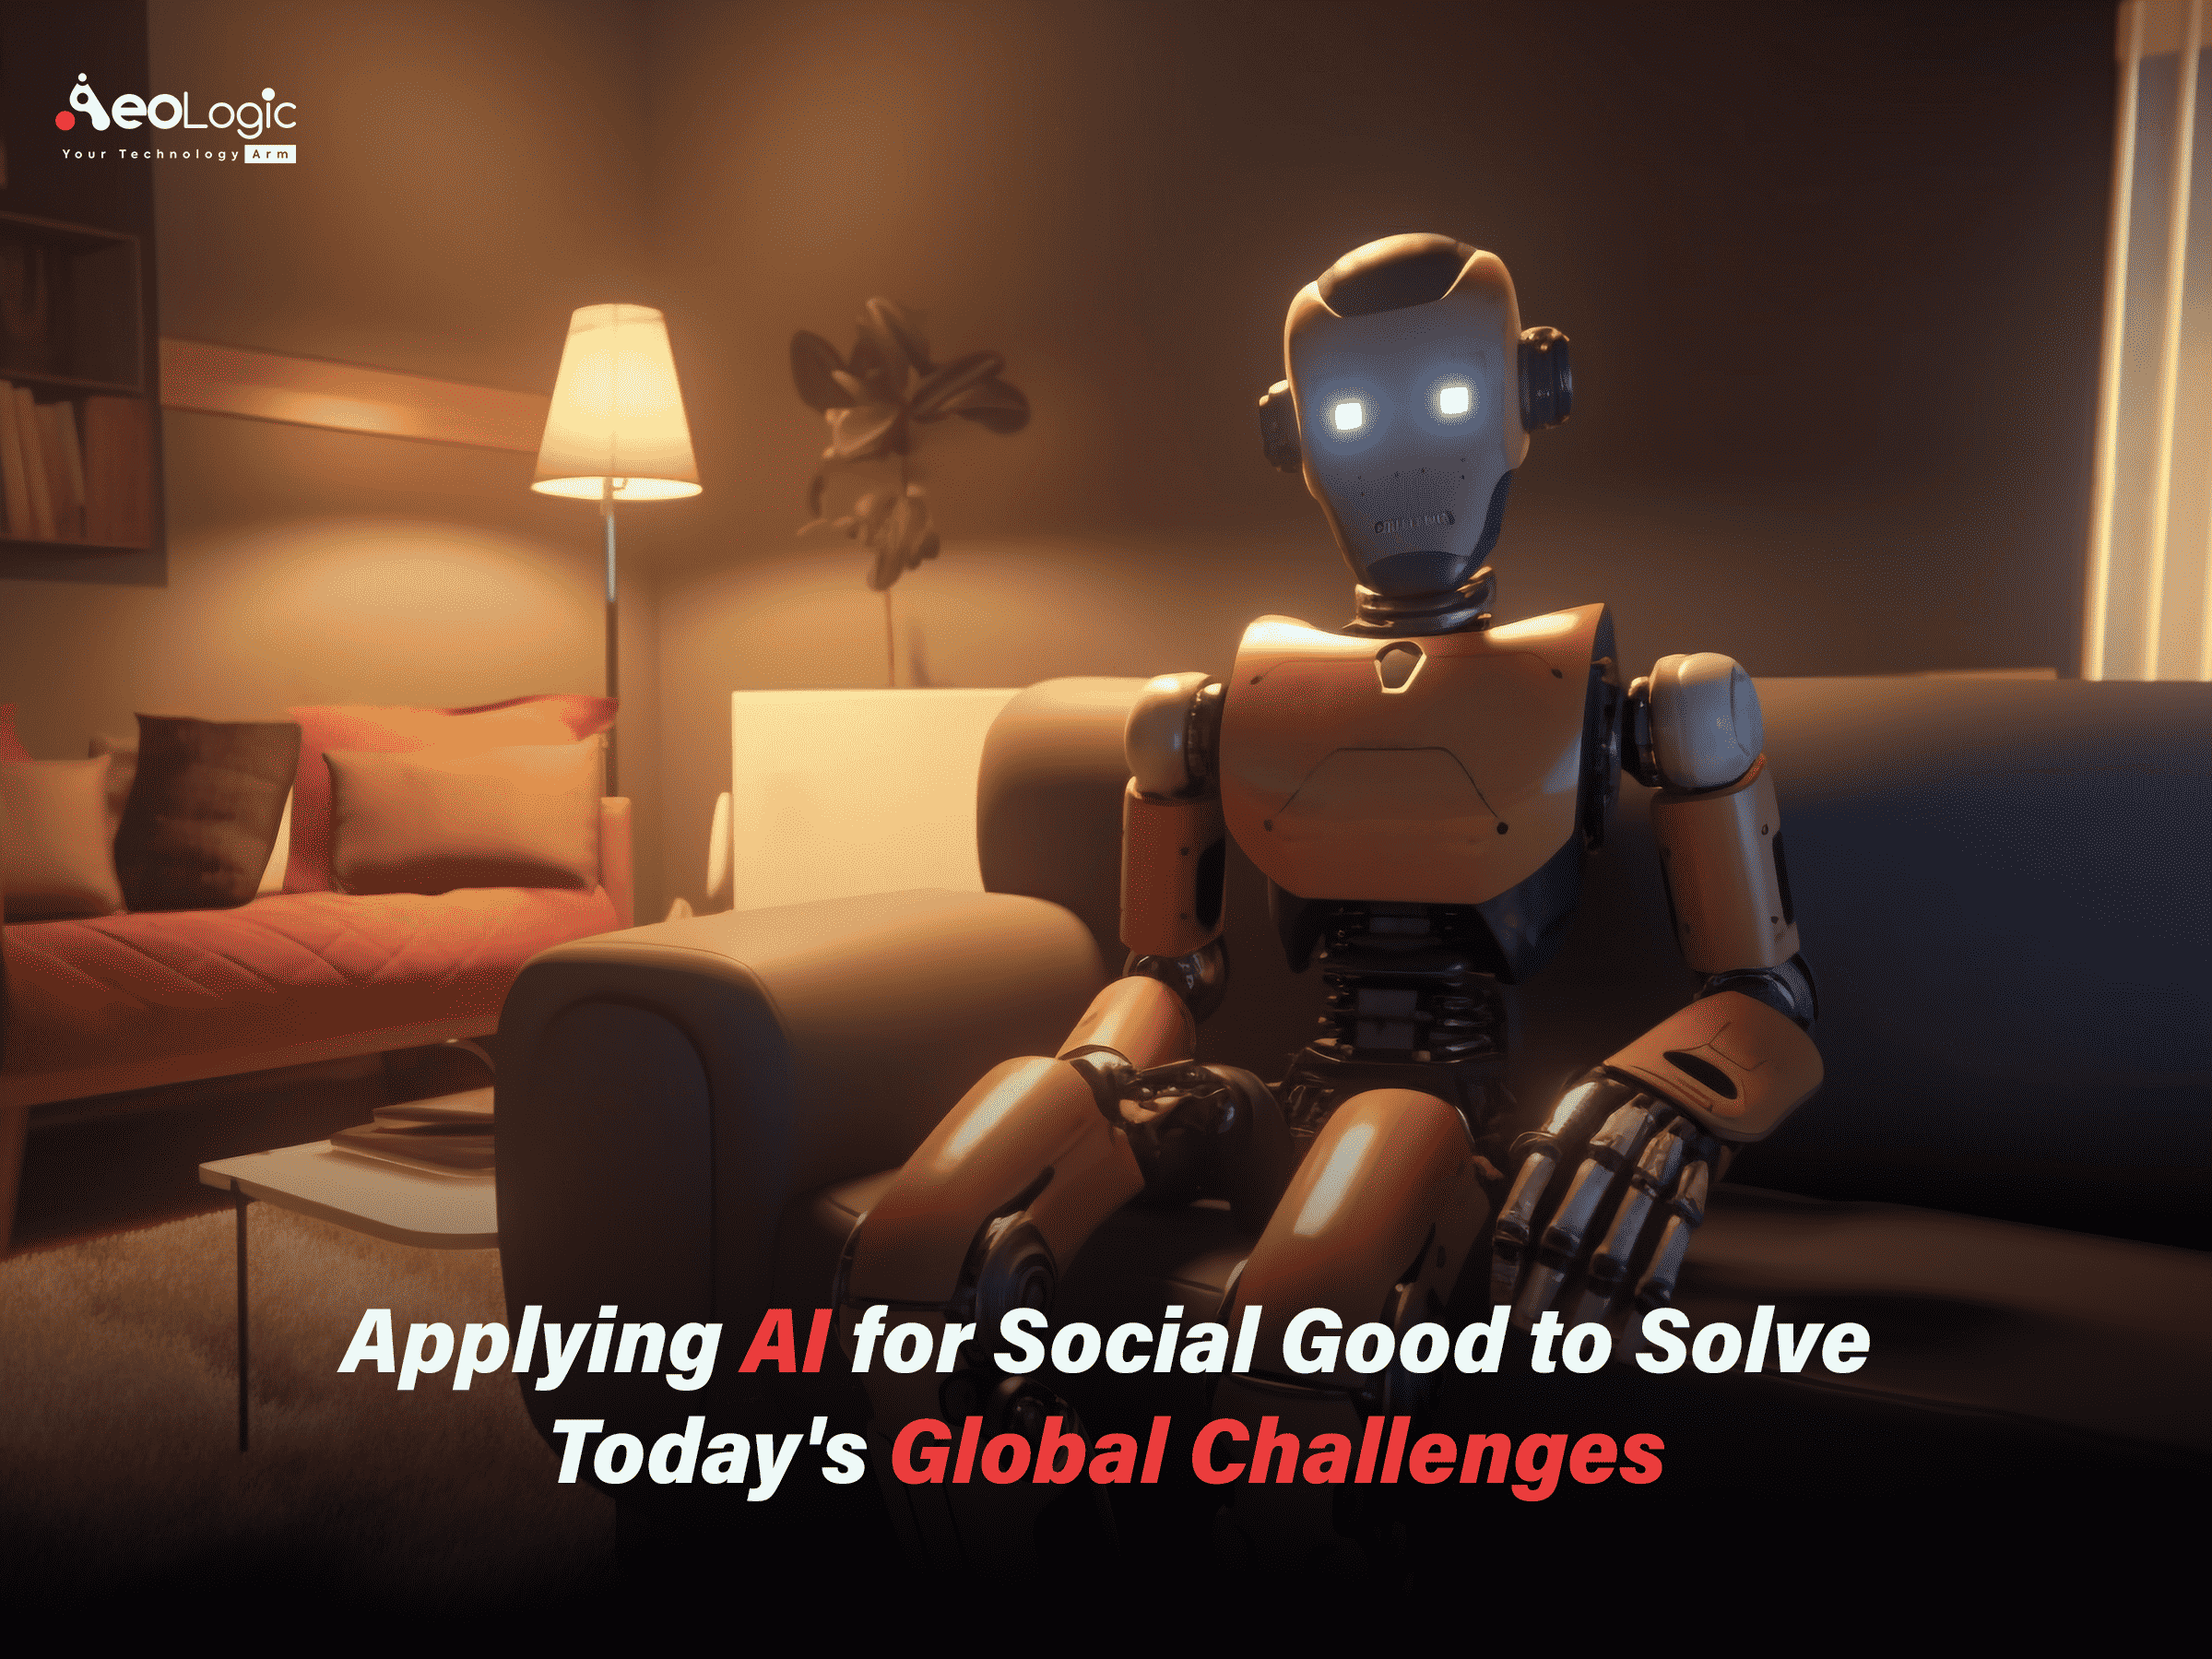 Technology for social good